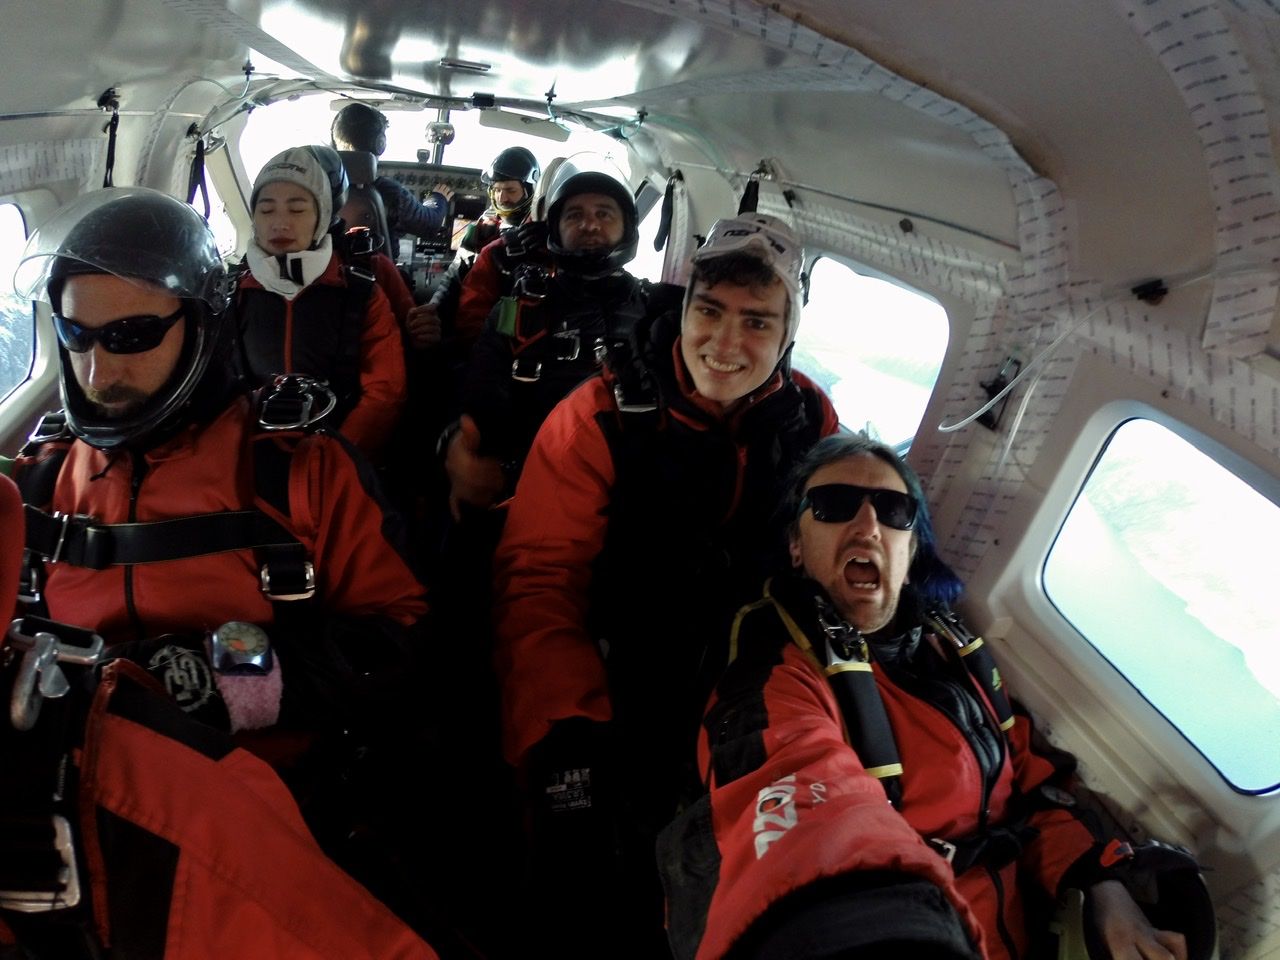 Skydiving plane selfie